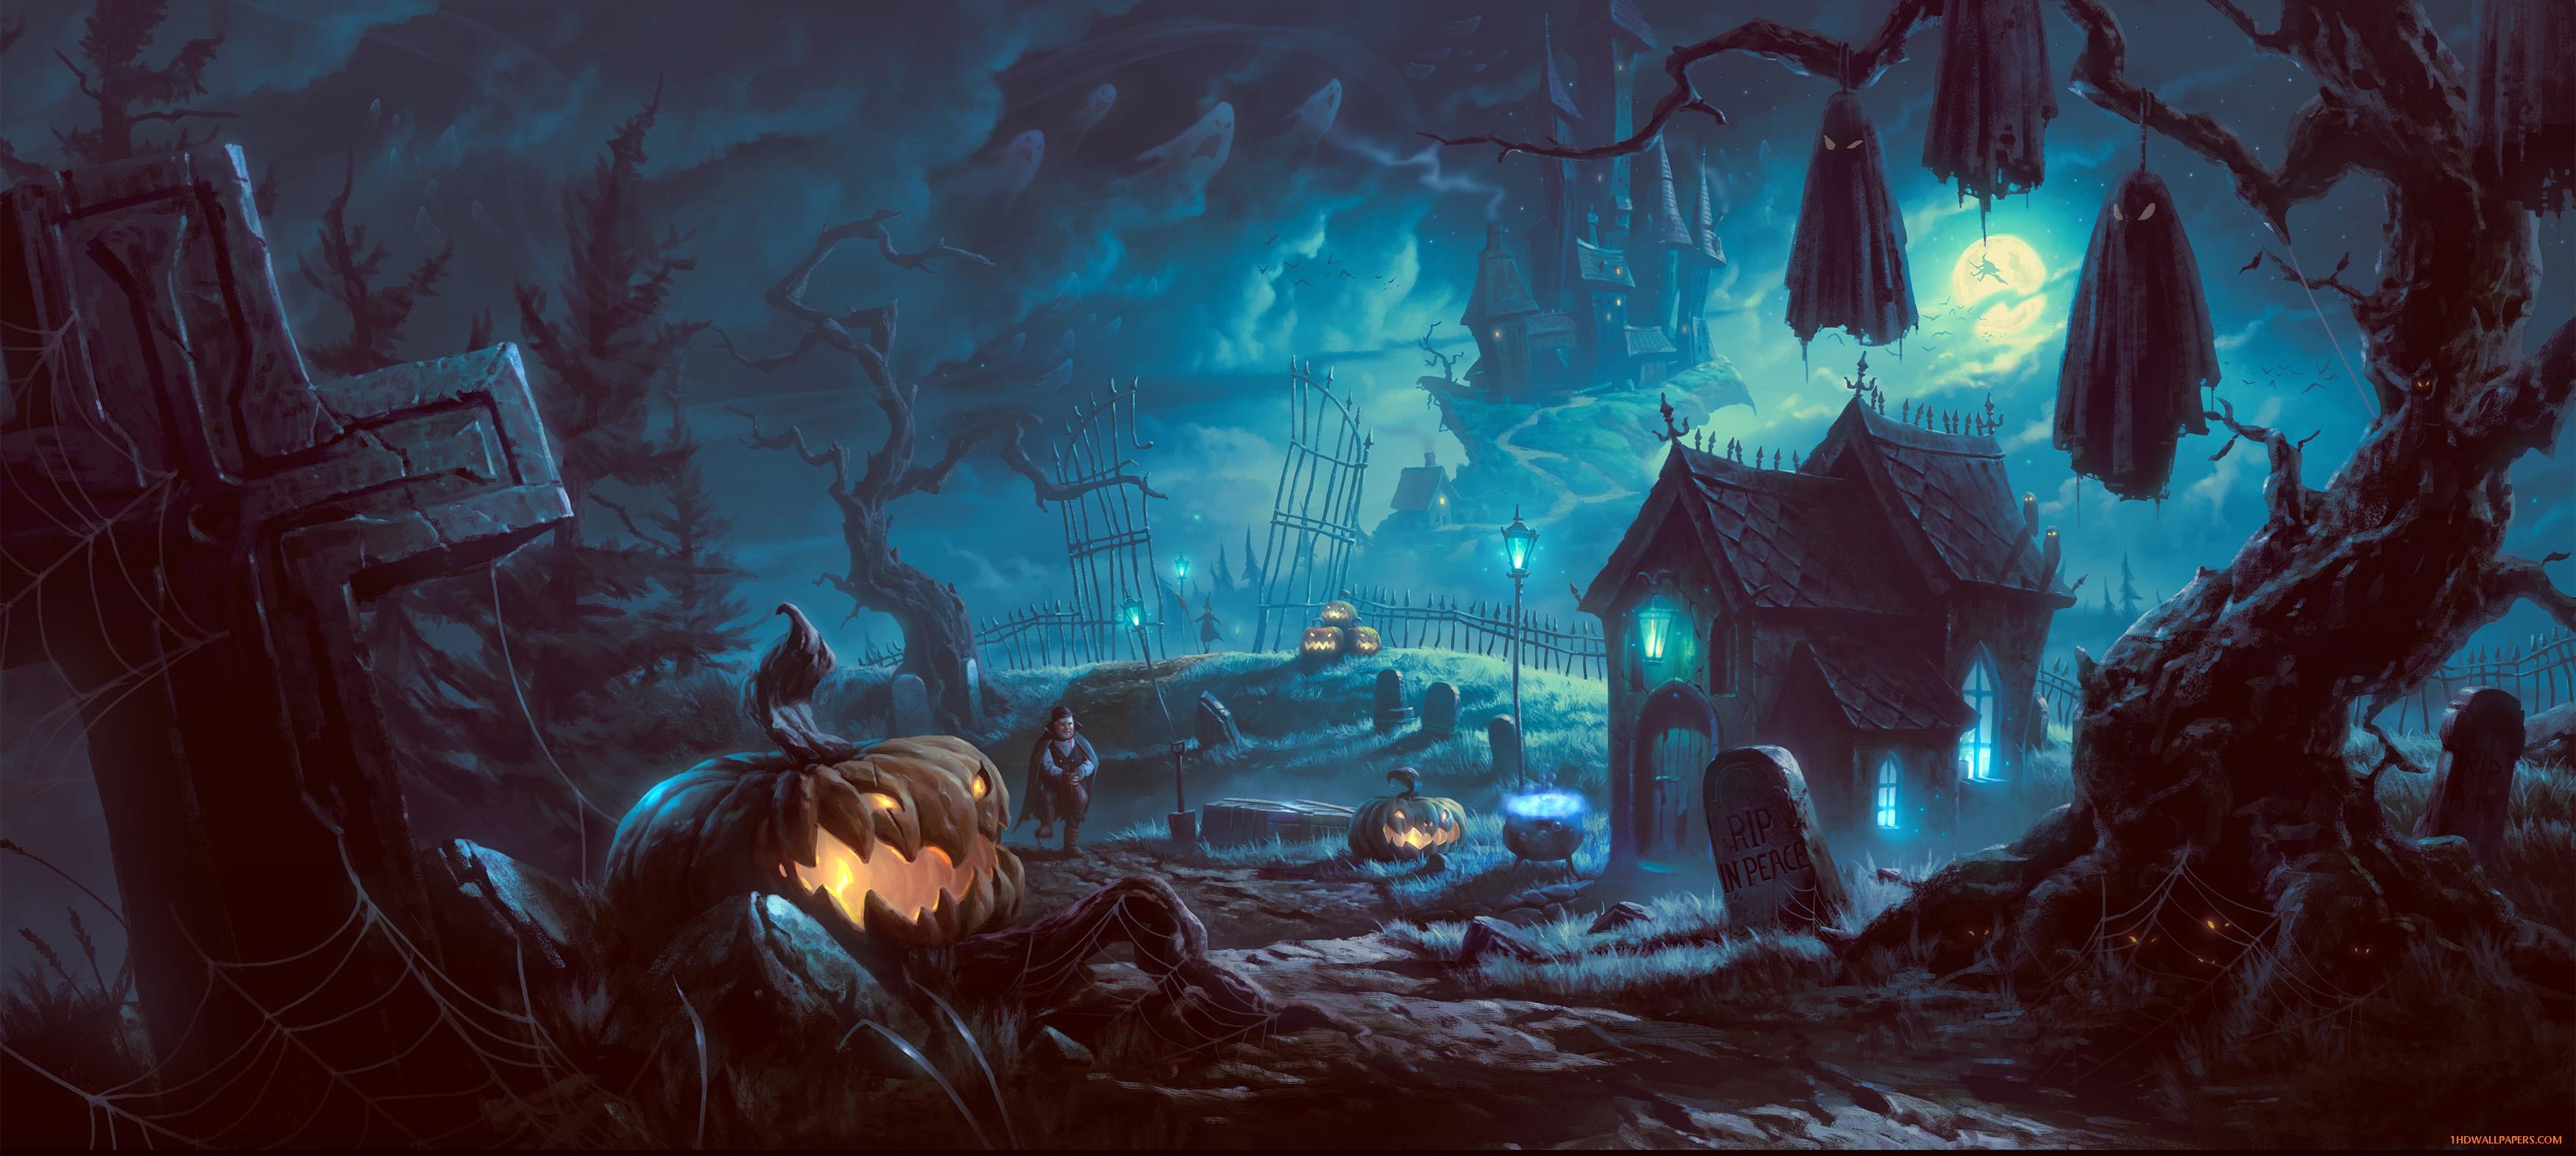 23+ Halloween backgrounds desktop ·① Download free amazing HD wallpapers for desktop, mobile 